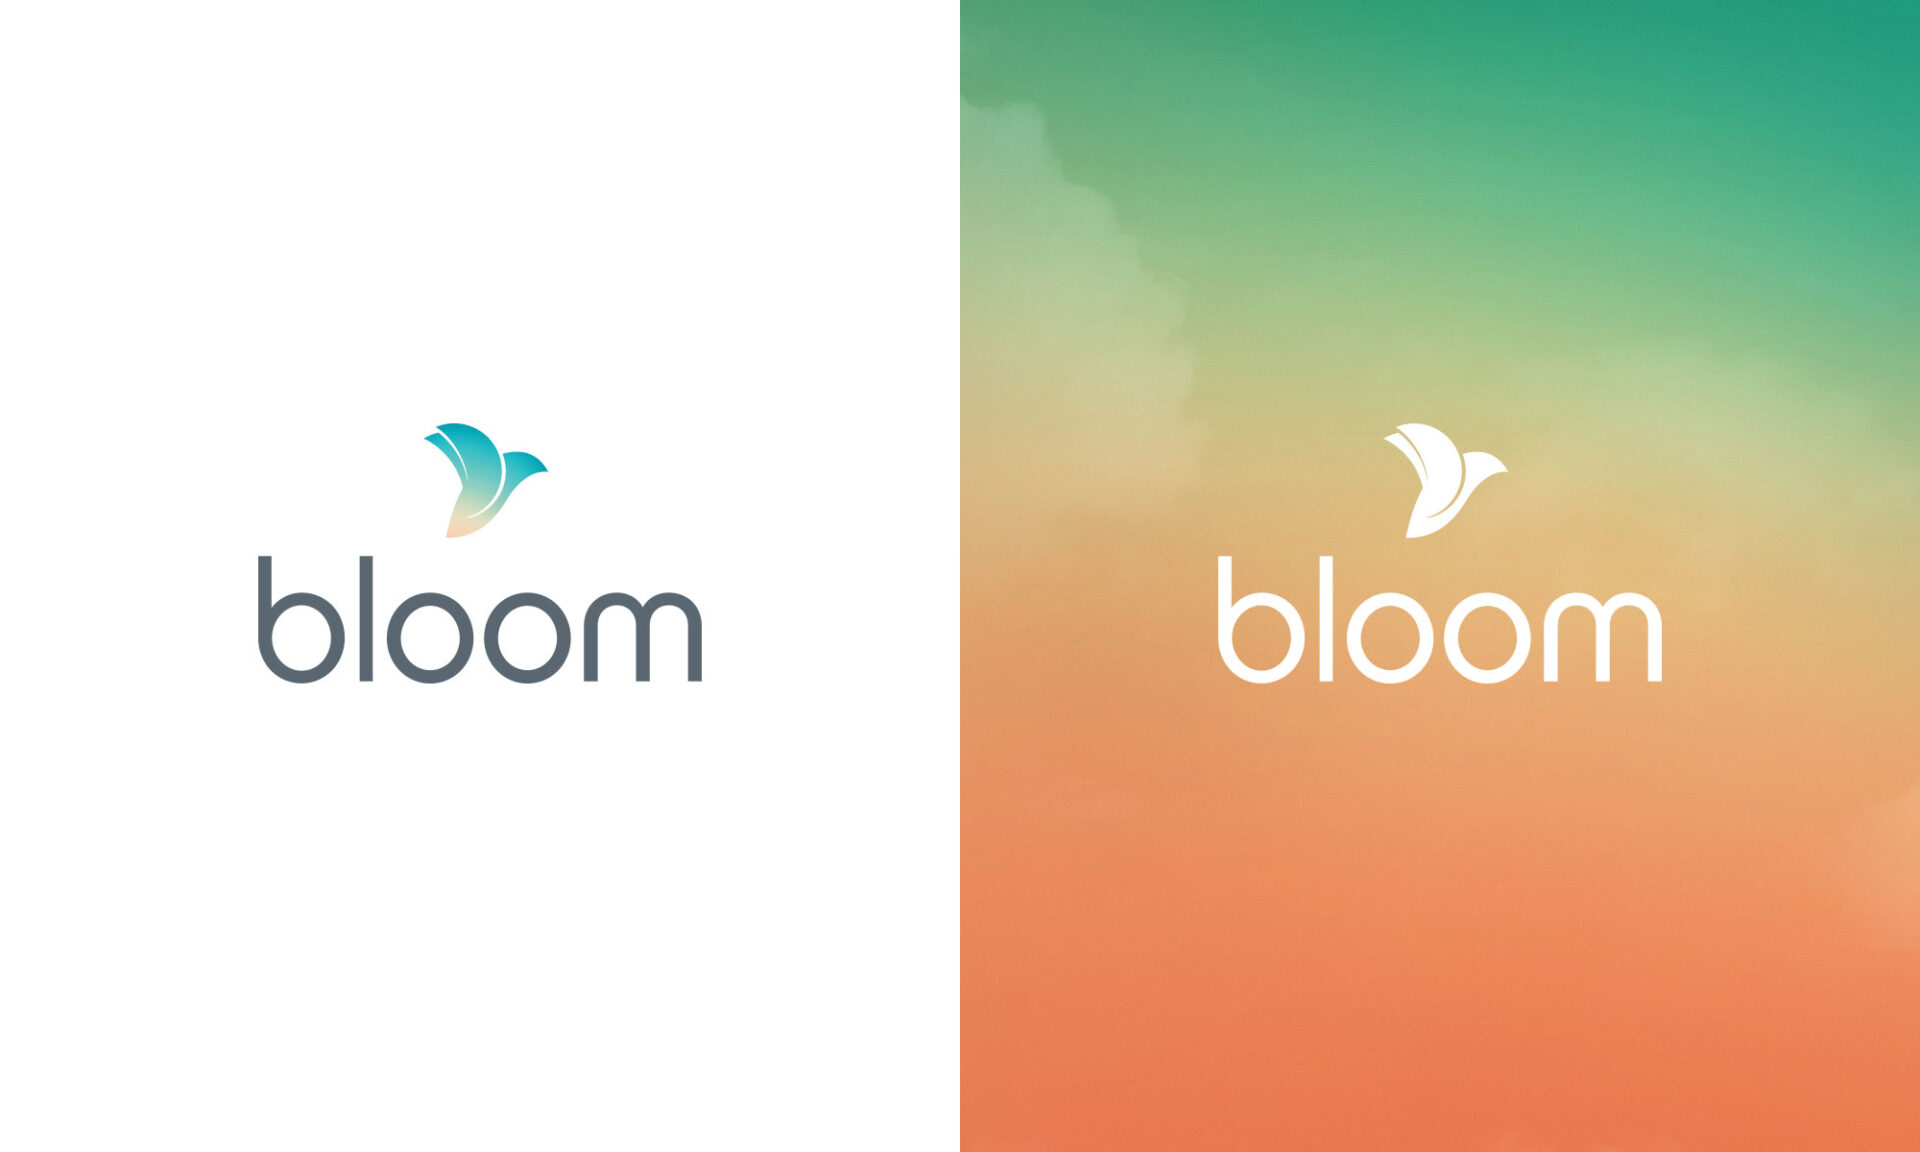 Bloom logos